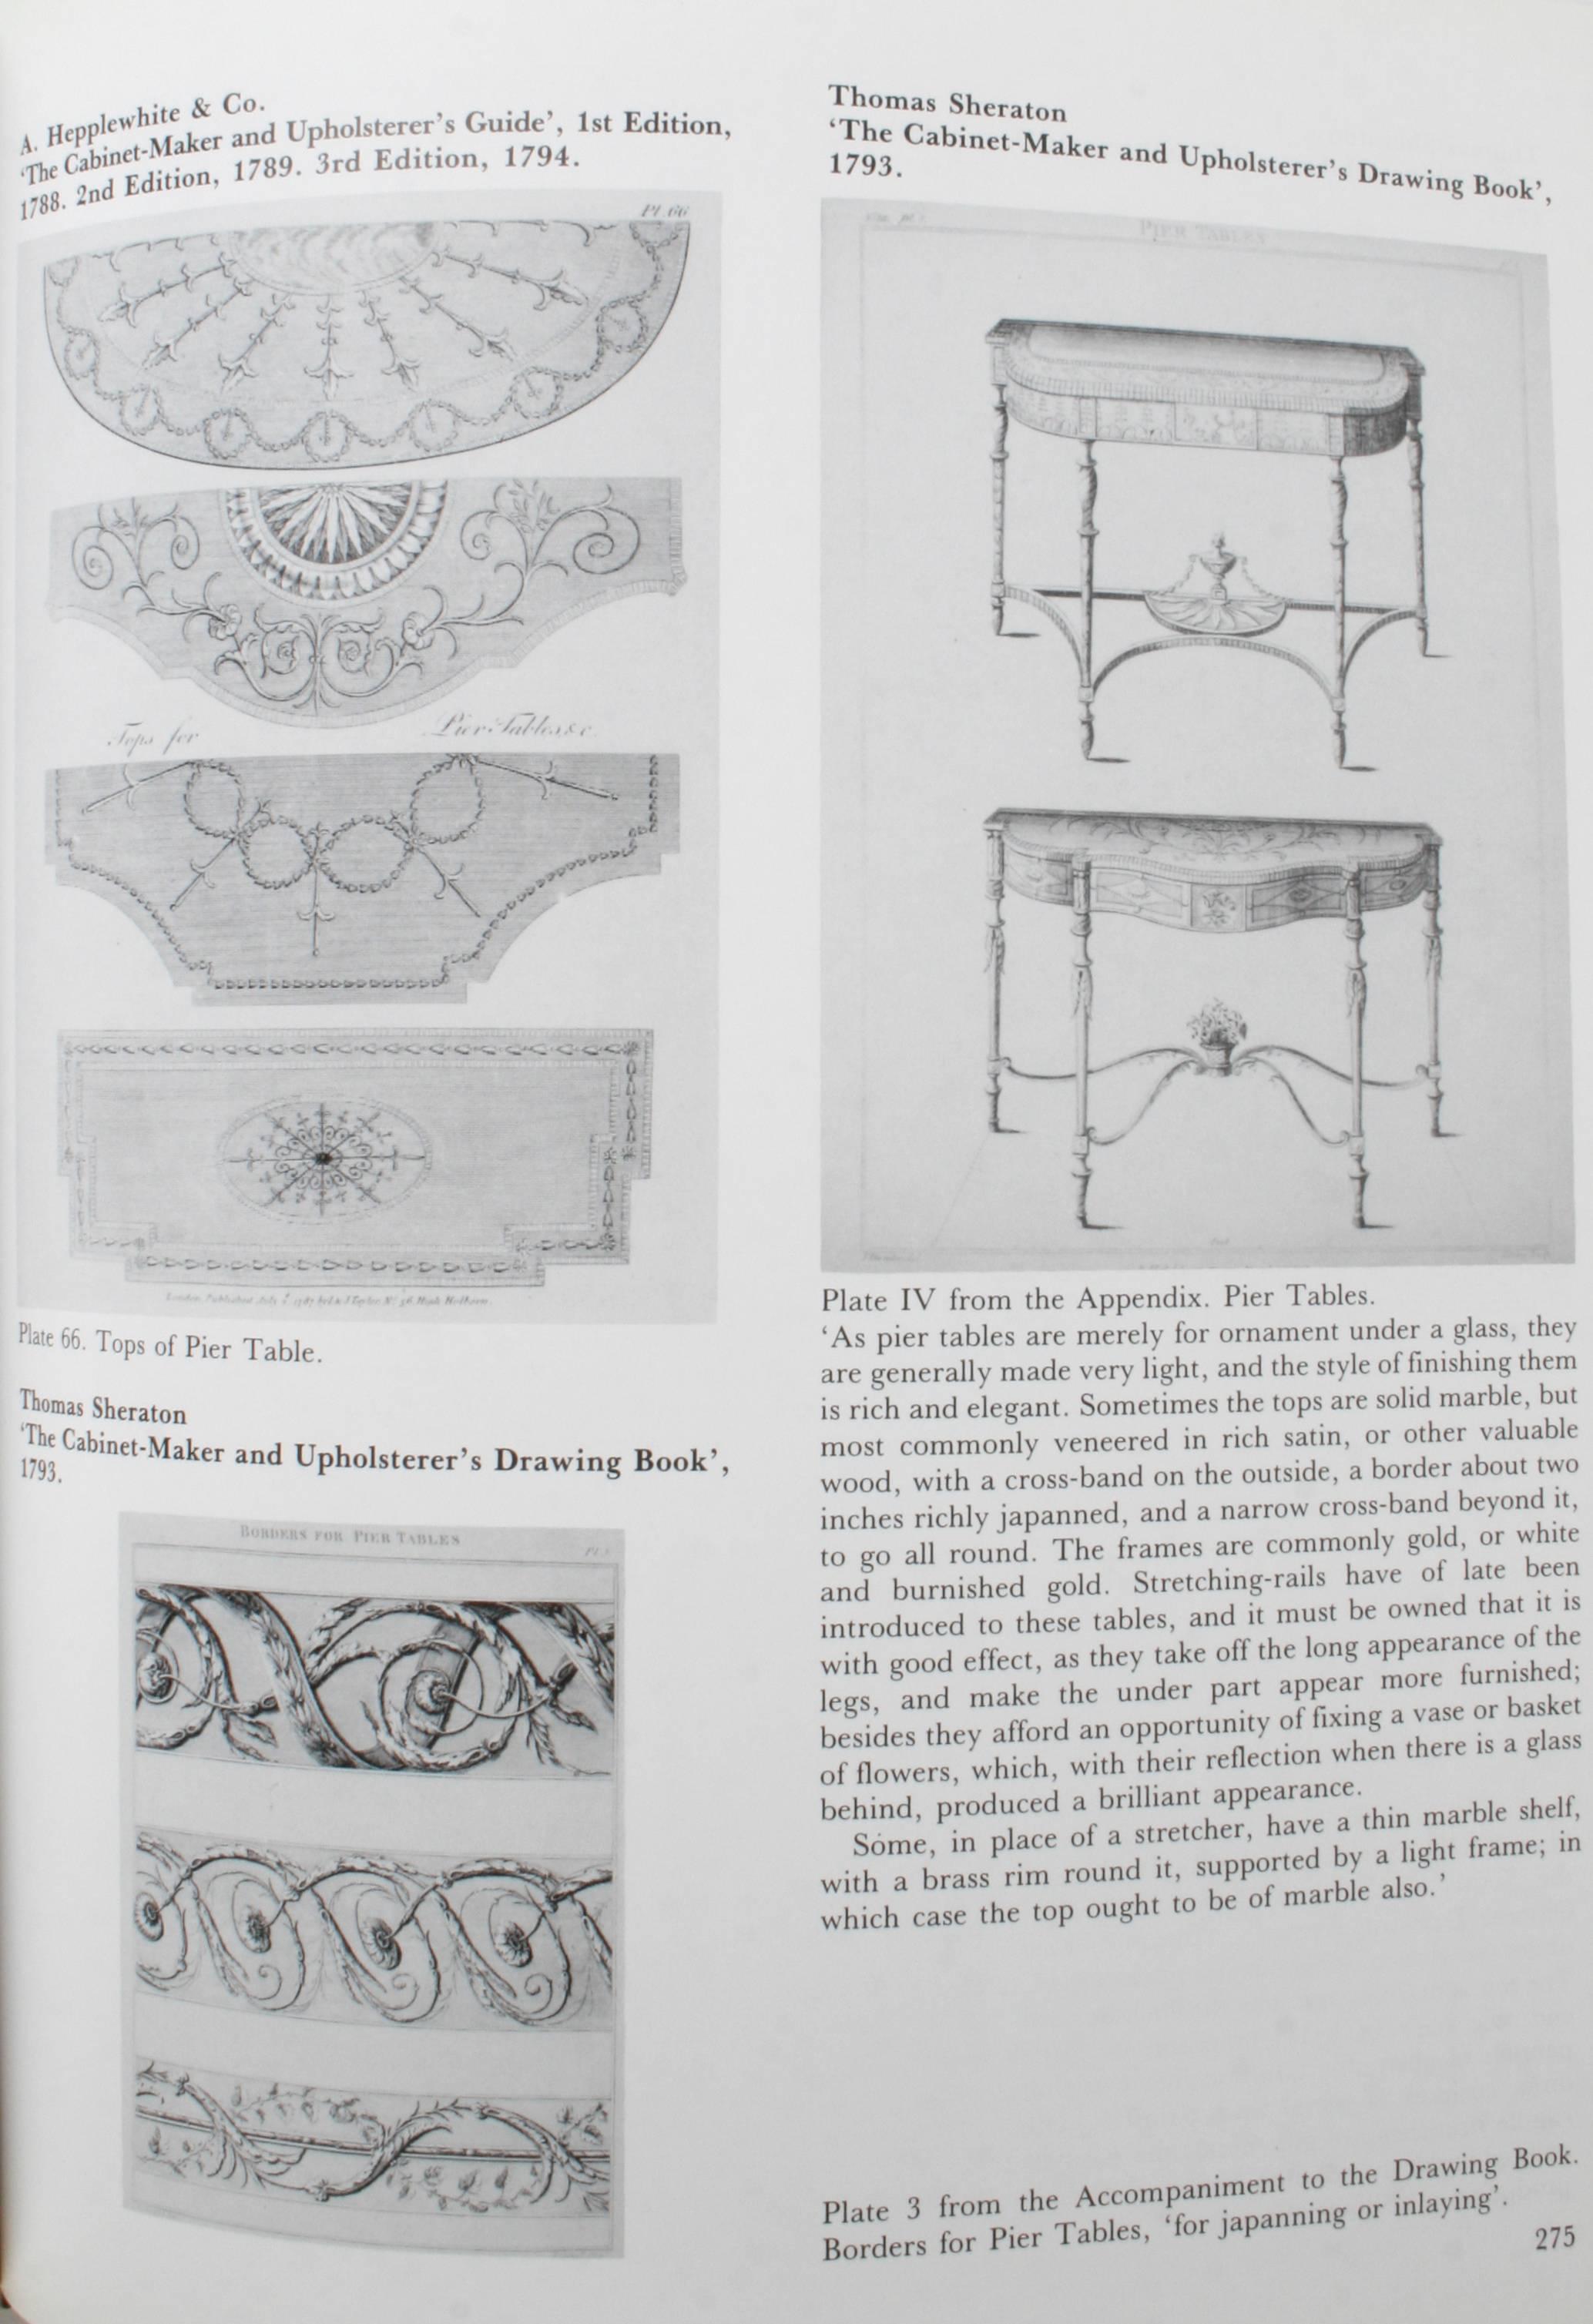 20th Century Pictorial Dictionary of British 18th Century Furniture Design